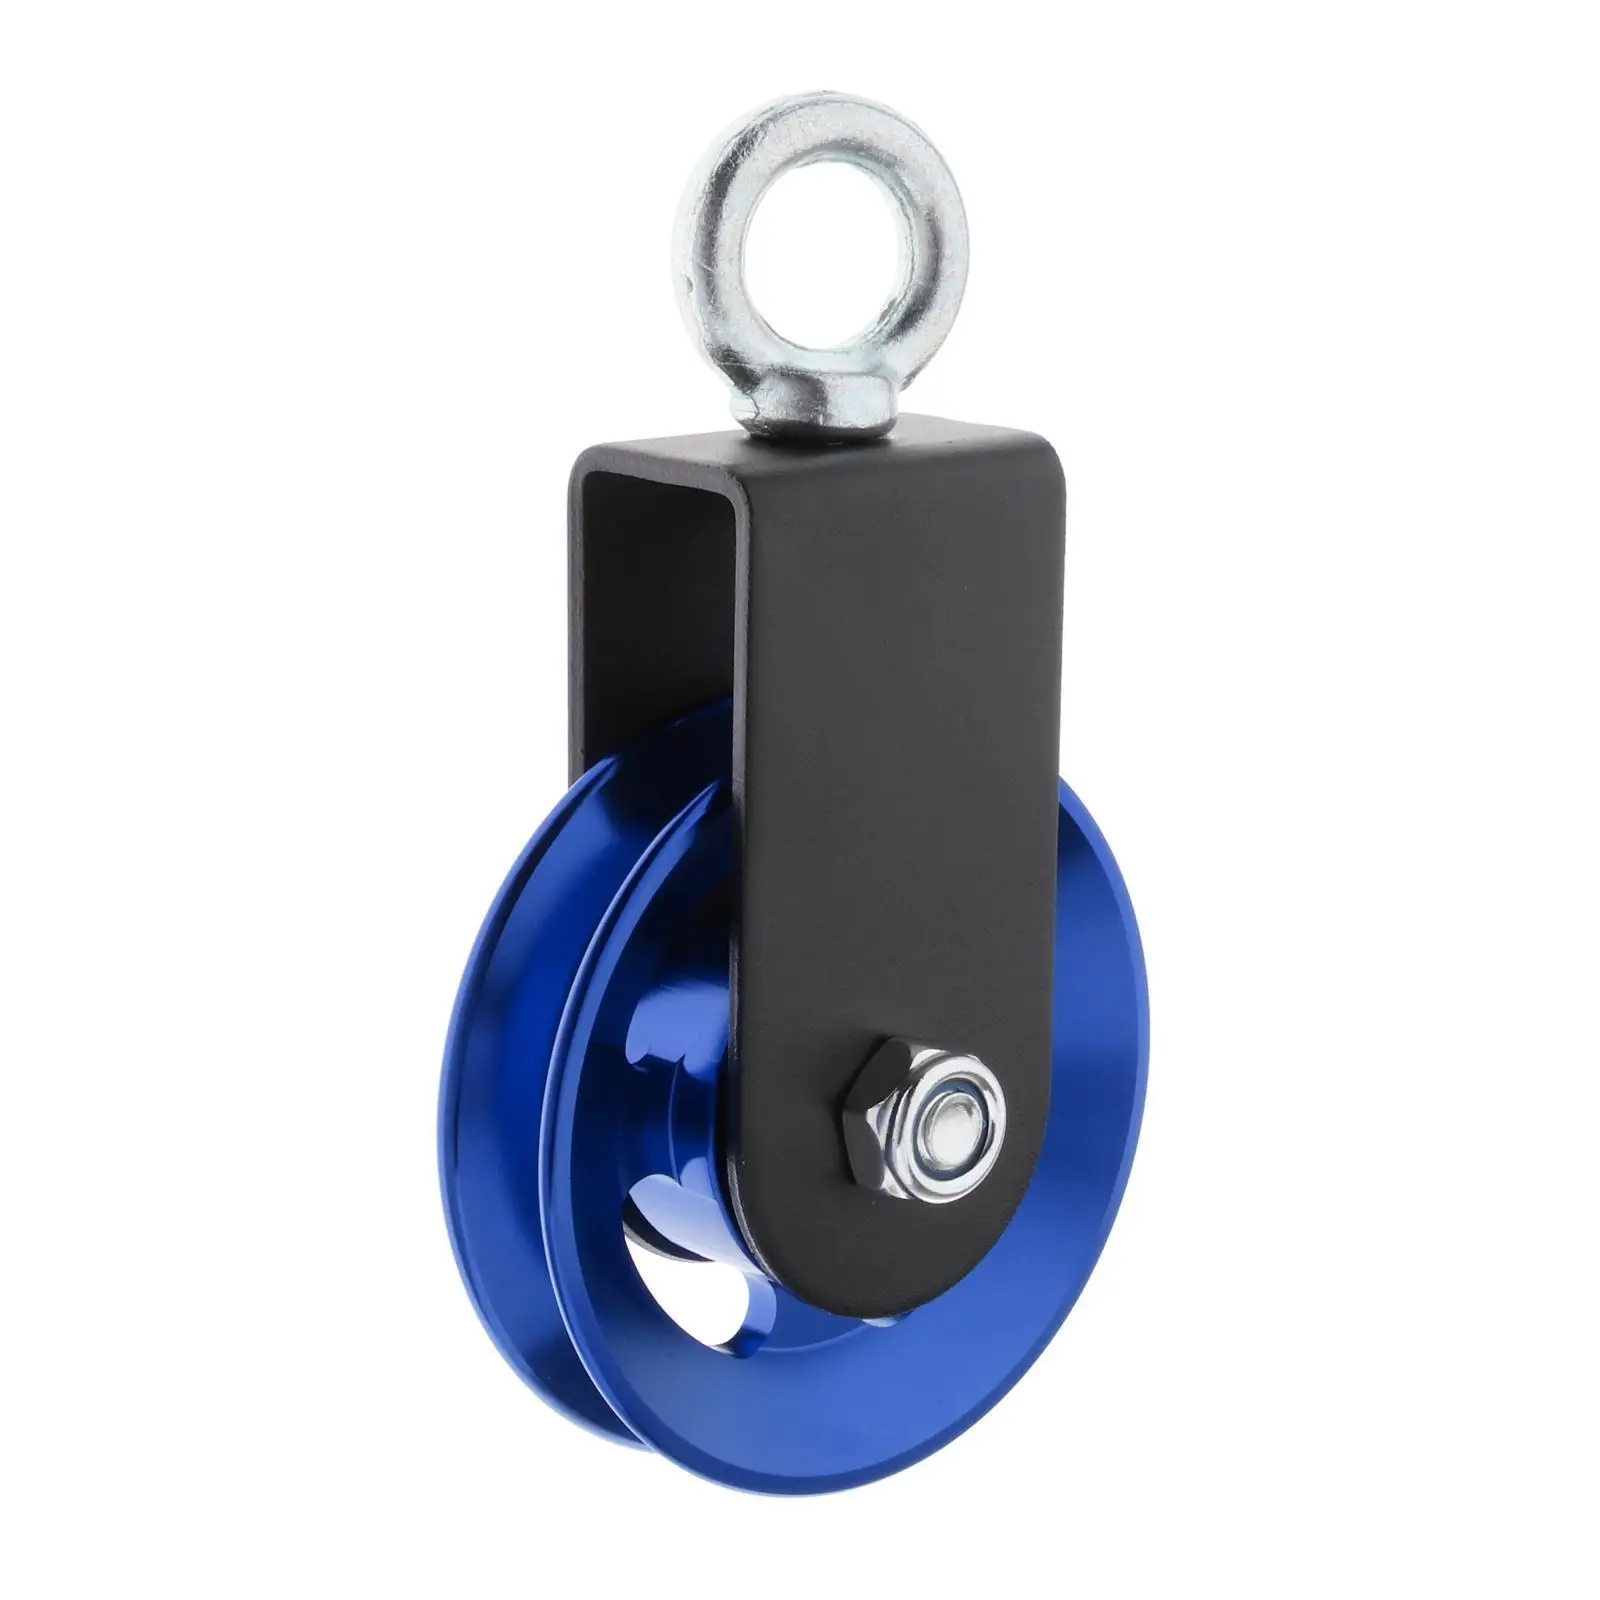 

Нагрузка на шкив из алюминиевого сплава для подъема кабеля, тренировочное колесо синего цвета